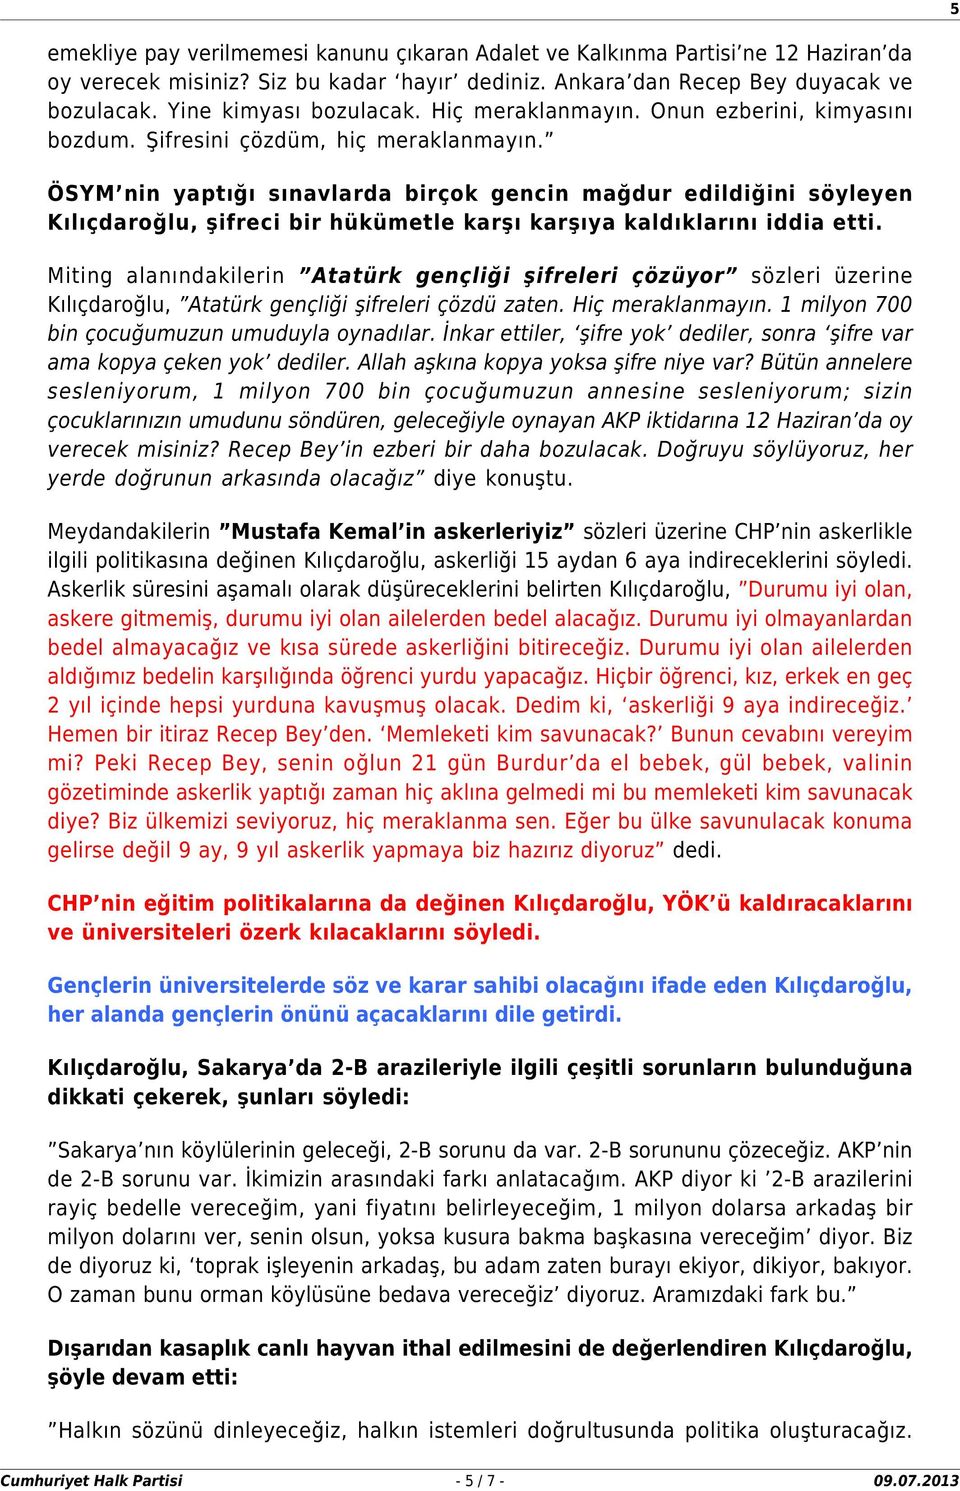 ÖSYM nin yaptığı sınavlarda birçok gencin mağdur edildiğini söyleyen Kılıçdaroğlu, şifreci bir hükümetle karşı karşıya kaldıklarını iddia etti.